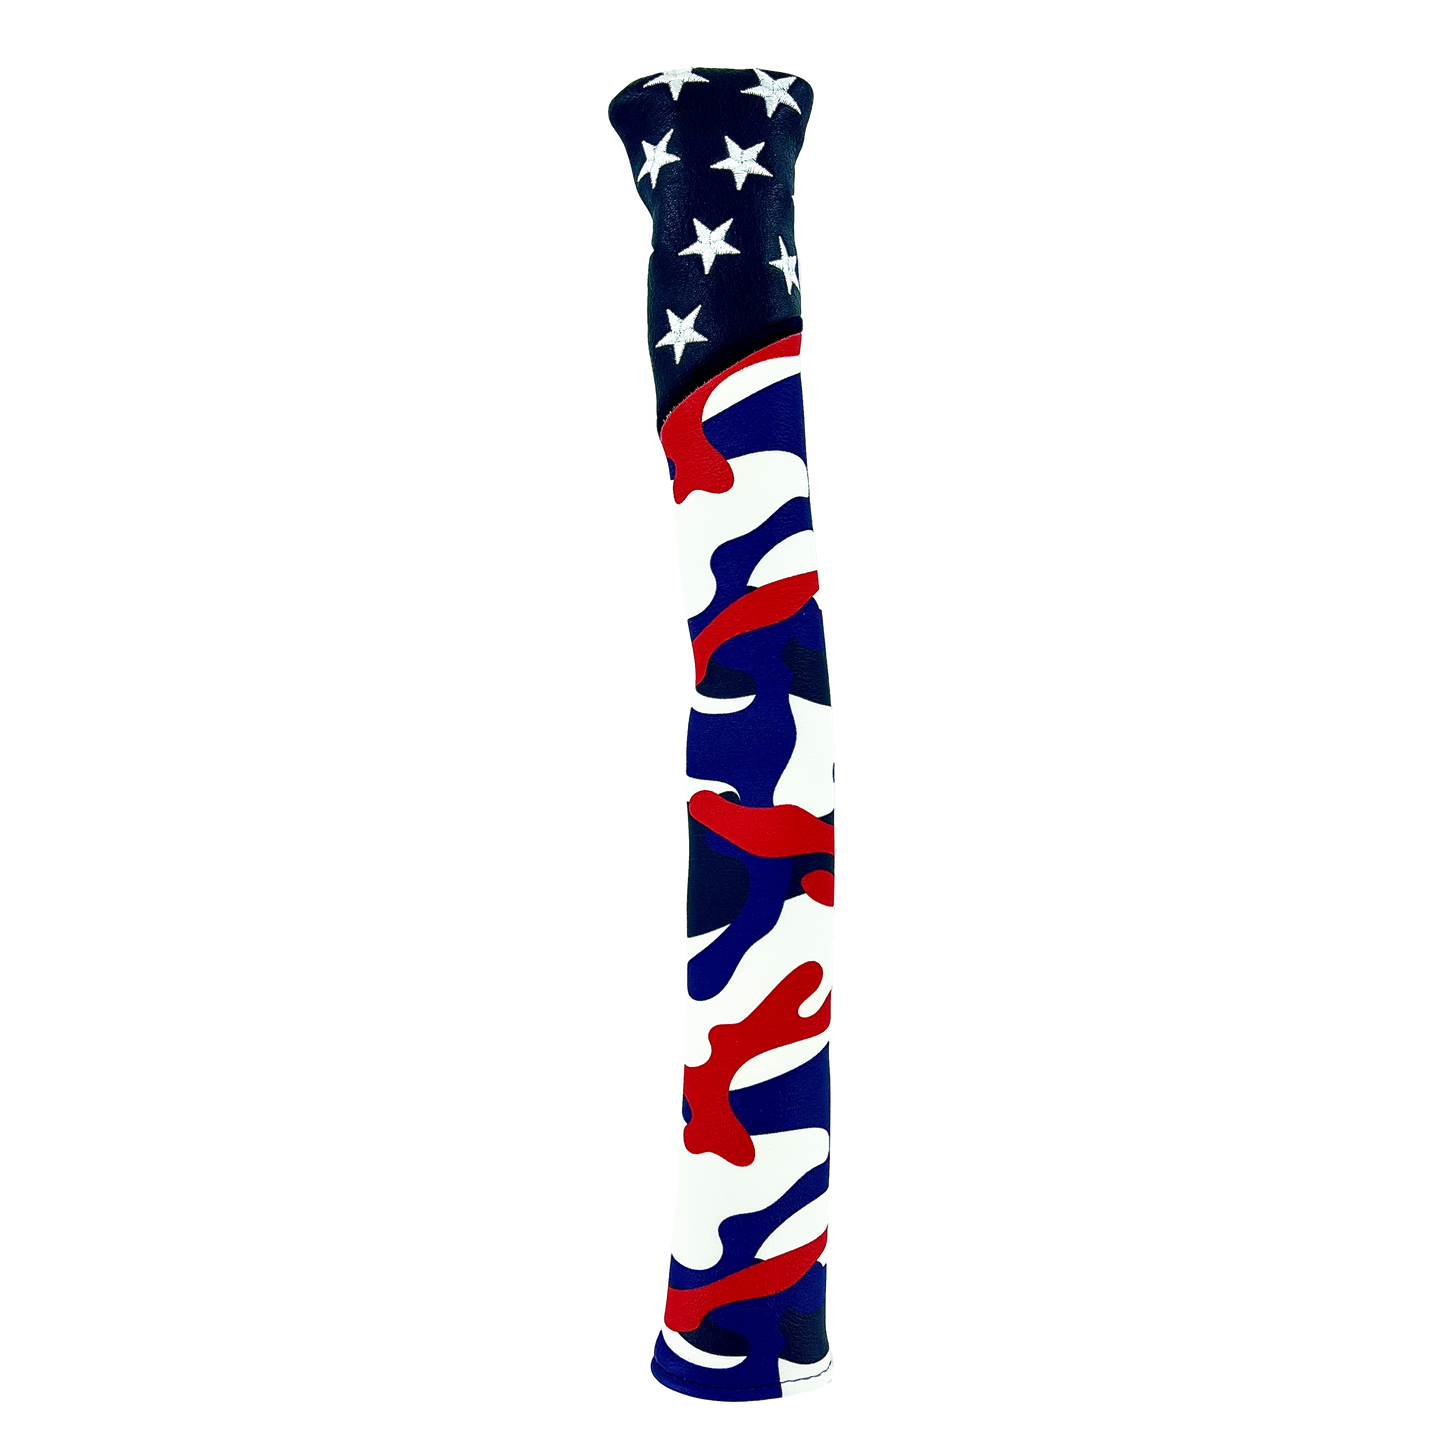 USA "Camo" Alignment Stick Cover